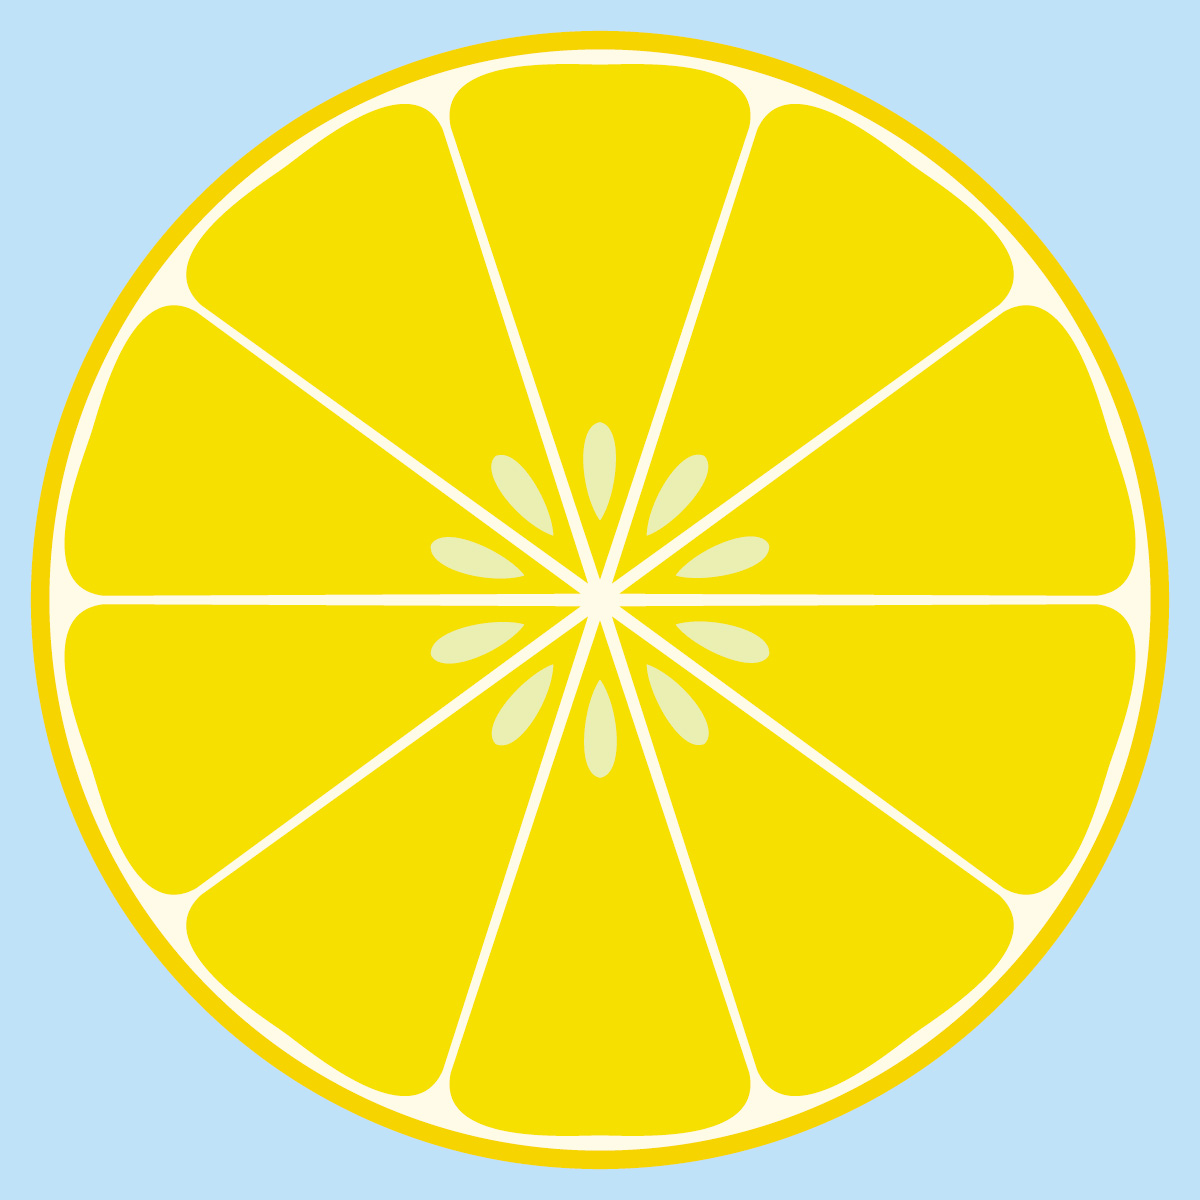 Sliced lemon clip art vector free clipart images clipartcow 3